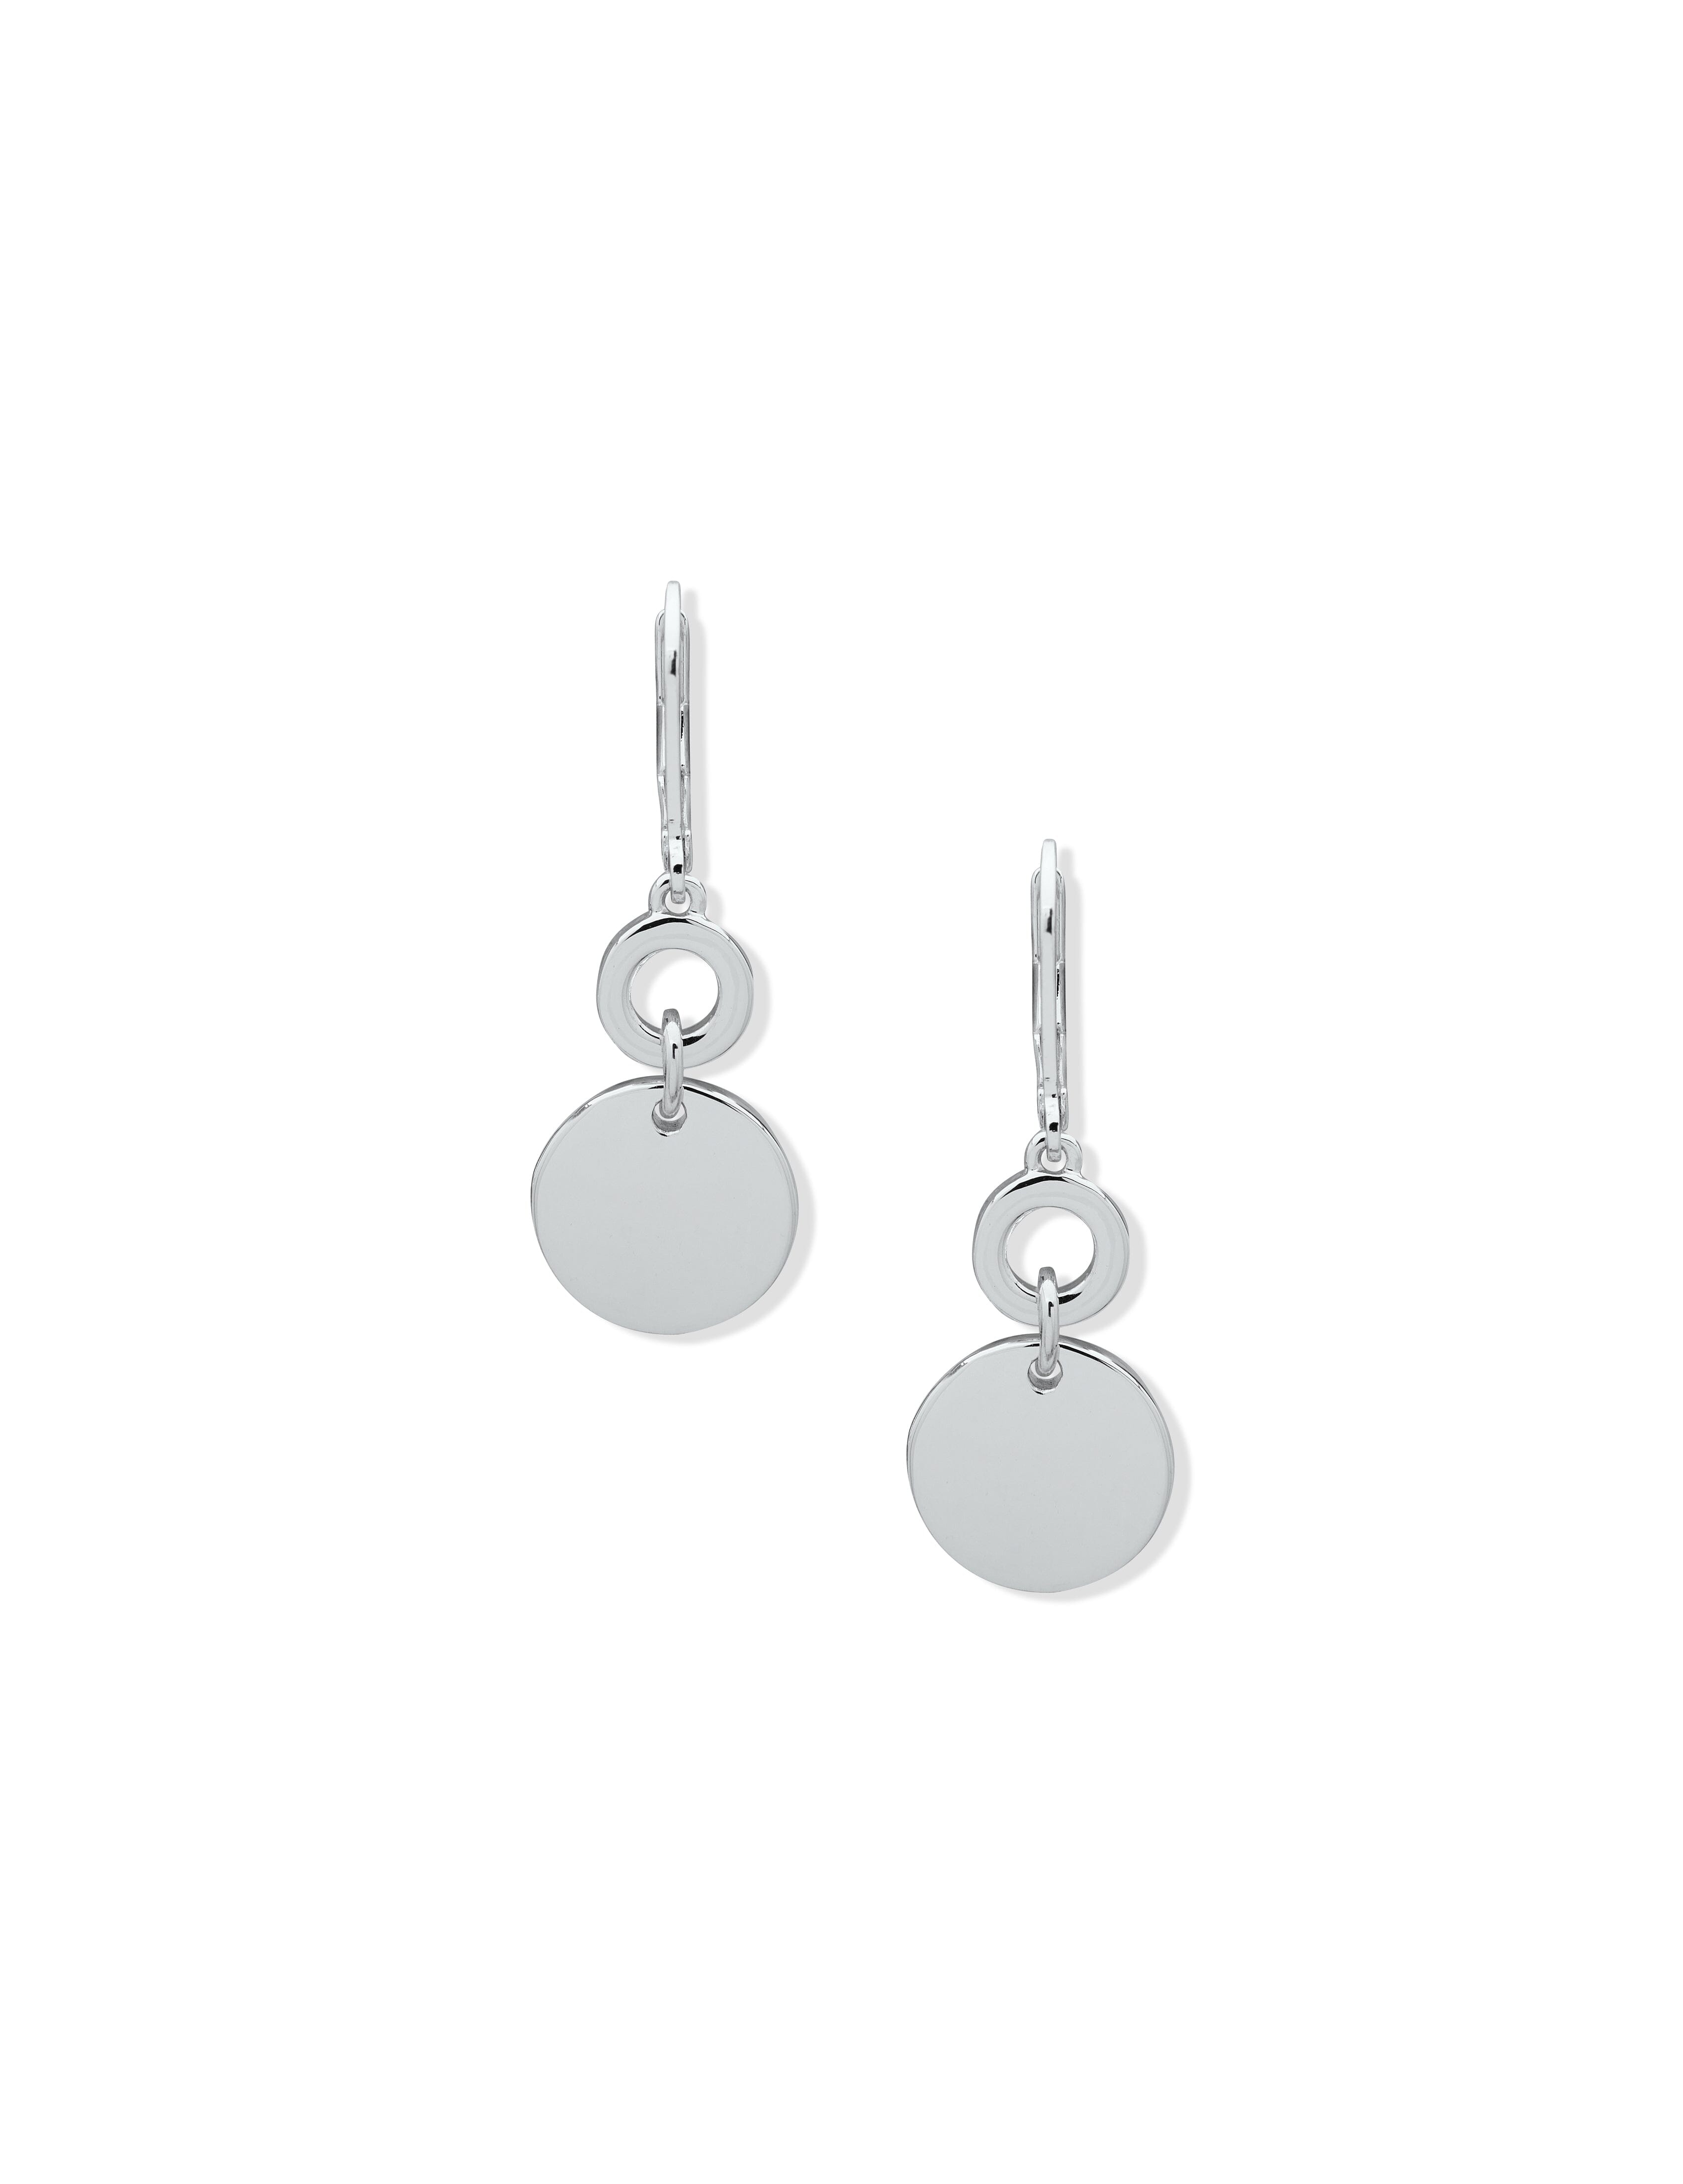 Anne Klein Women's Coin Drop Pierced Earrings in Silver Tone size 1.65"